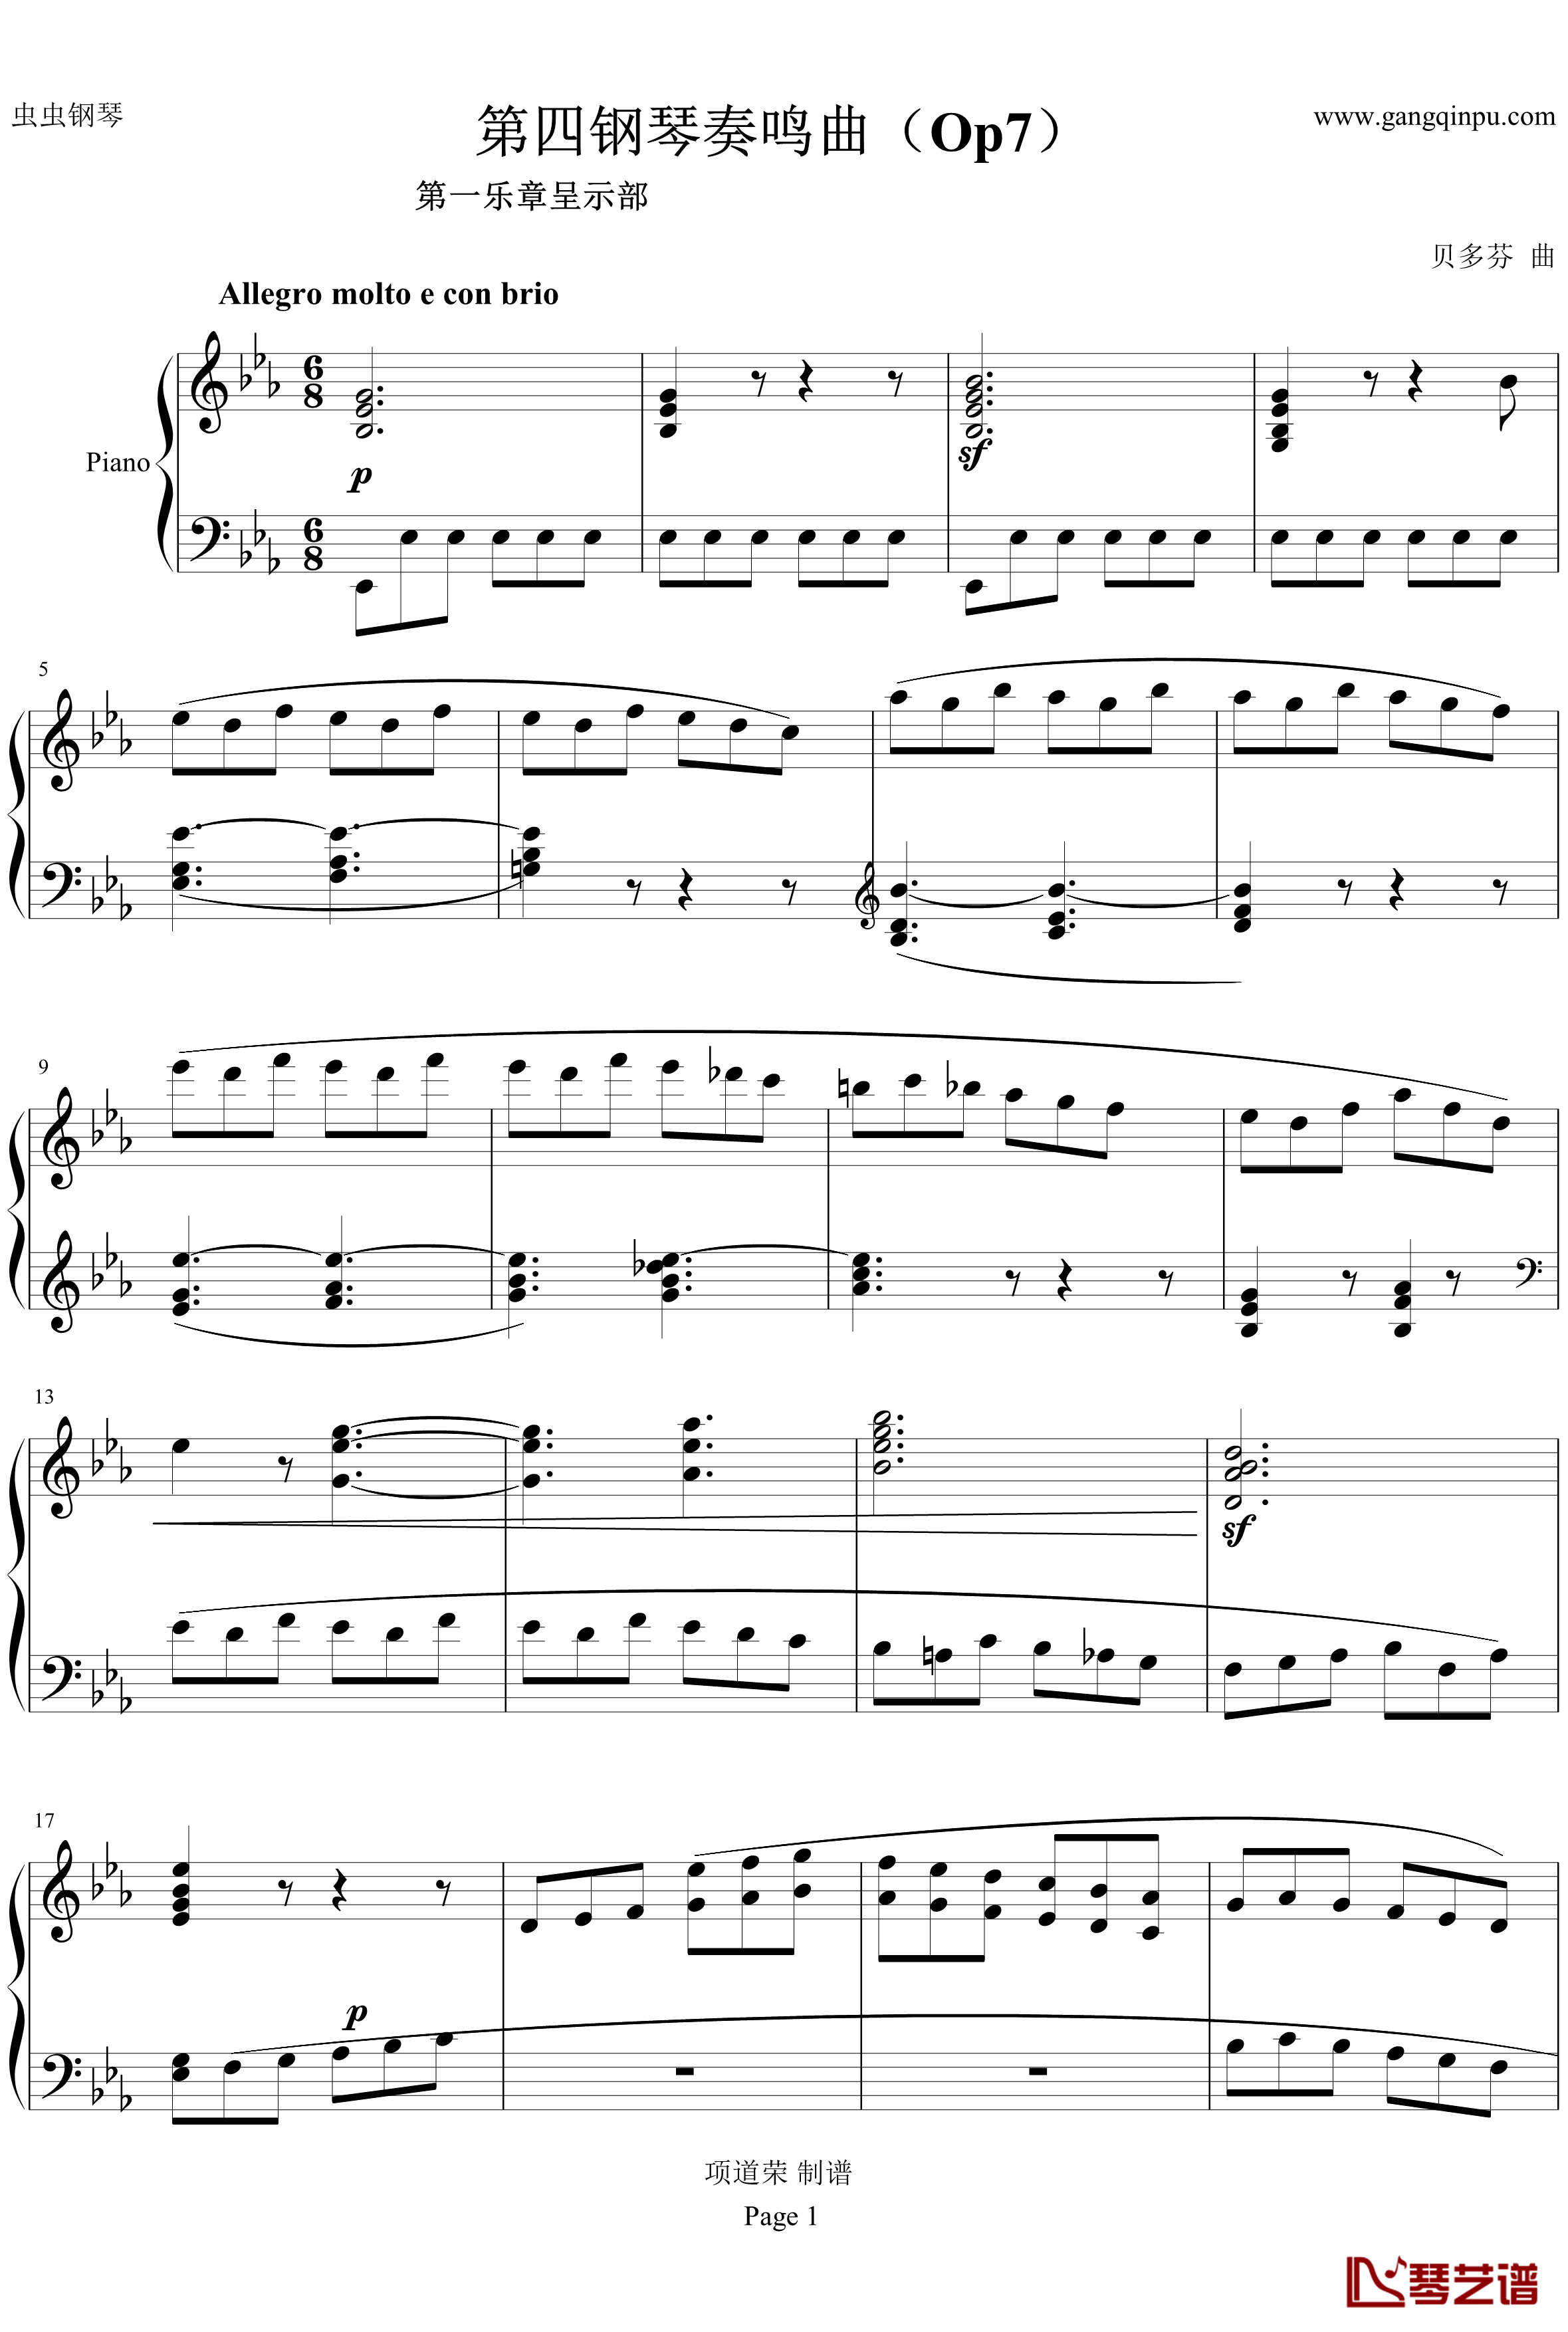 第四钢琴奏鸣曲Op7钢琴谱-贝多芬-beethoven1